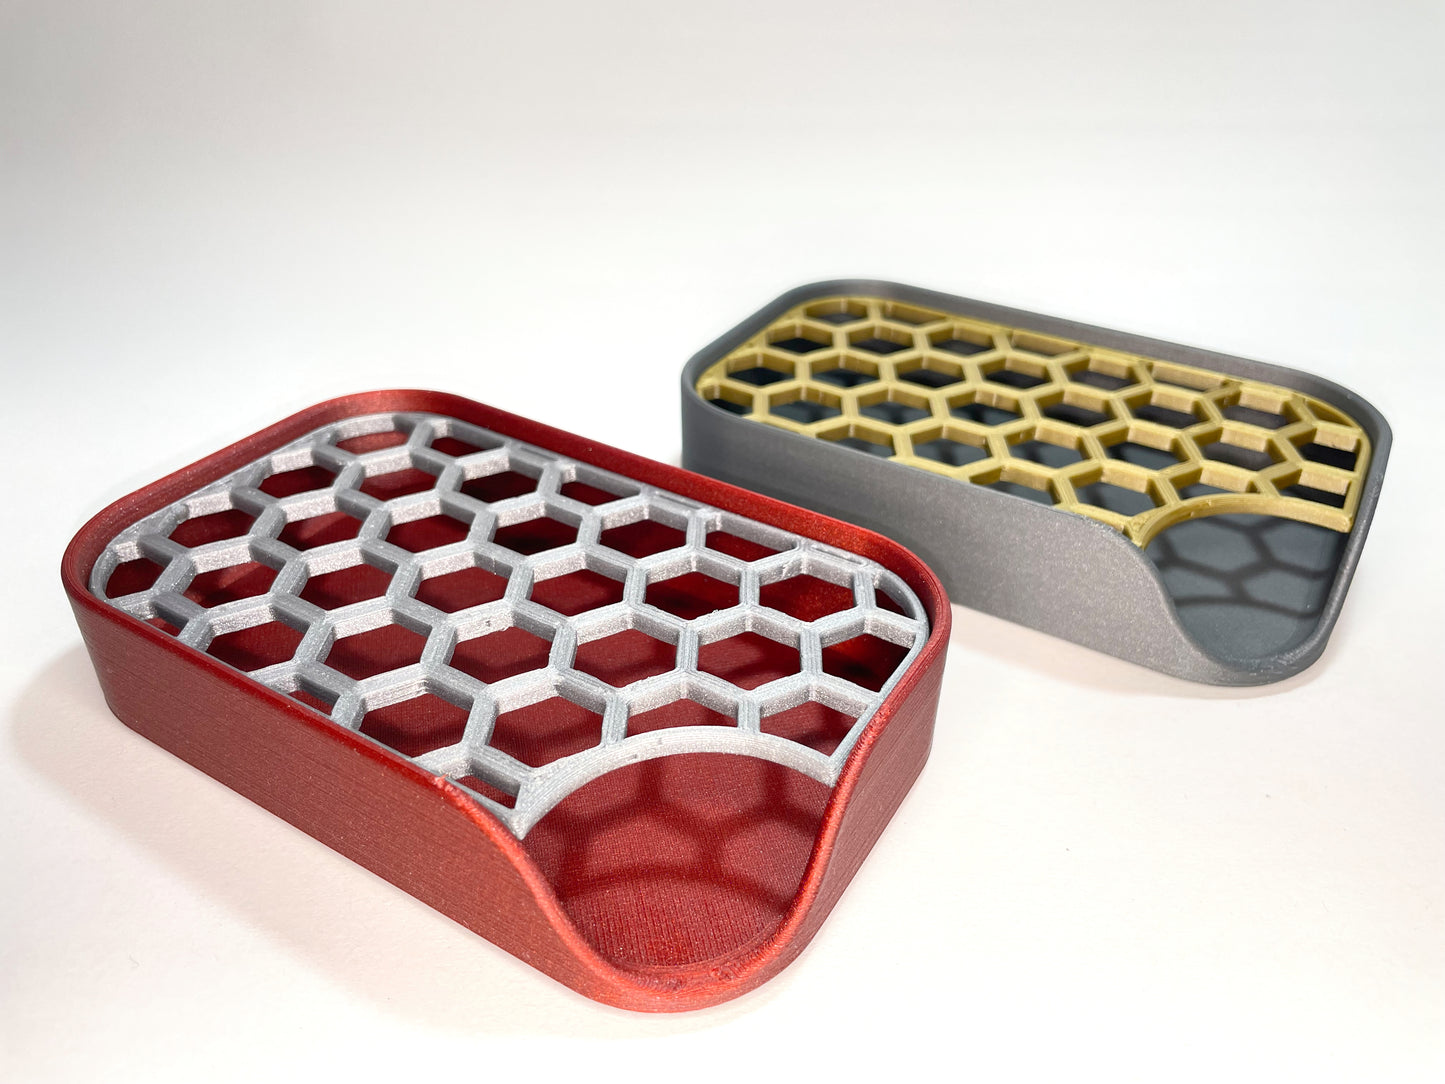 Bienenwaben - Seifenschale mit Abtropfgitter 3D-gedruckt - Wählen Sie aus 4 Farbkombinationen für Ihr stilvolles Badezimmer!